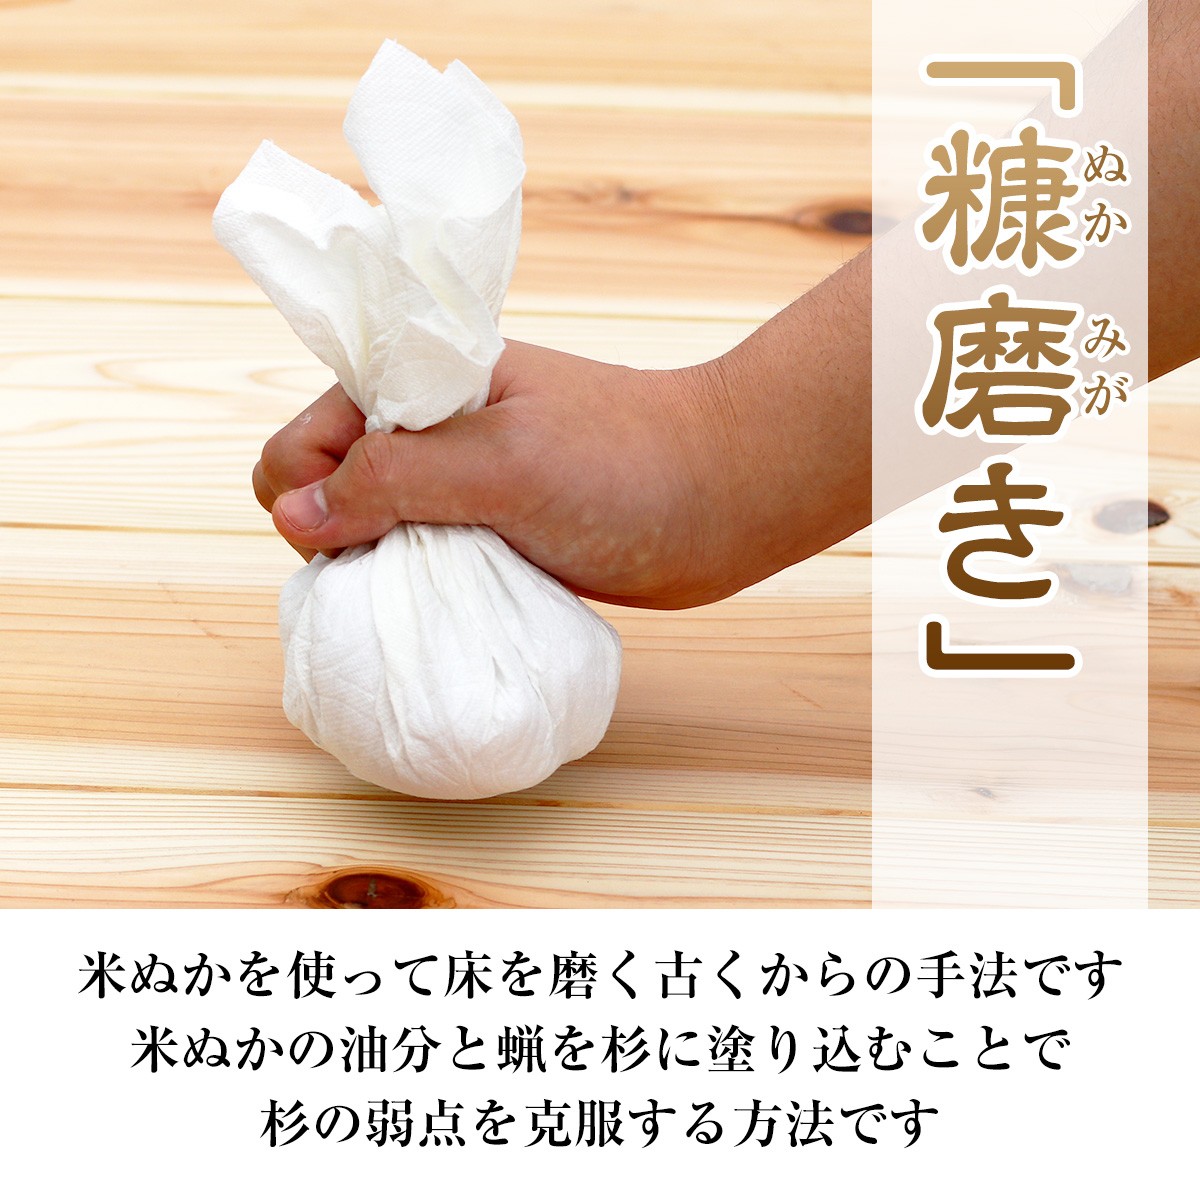 糠磨きとは、米ぬかを使って床を磨く古くからの手法です。米ぬかの油分と蝋を杉に塗り込むことで杉の弱点を克服する方法です